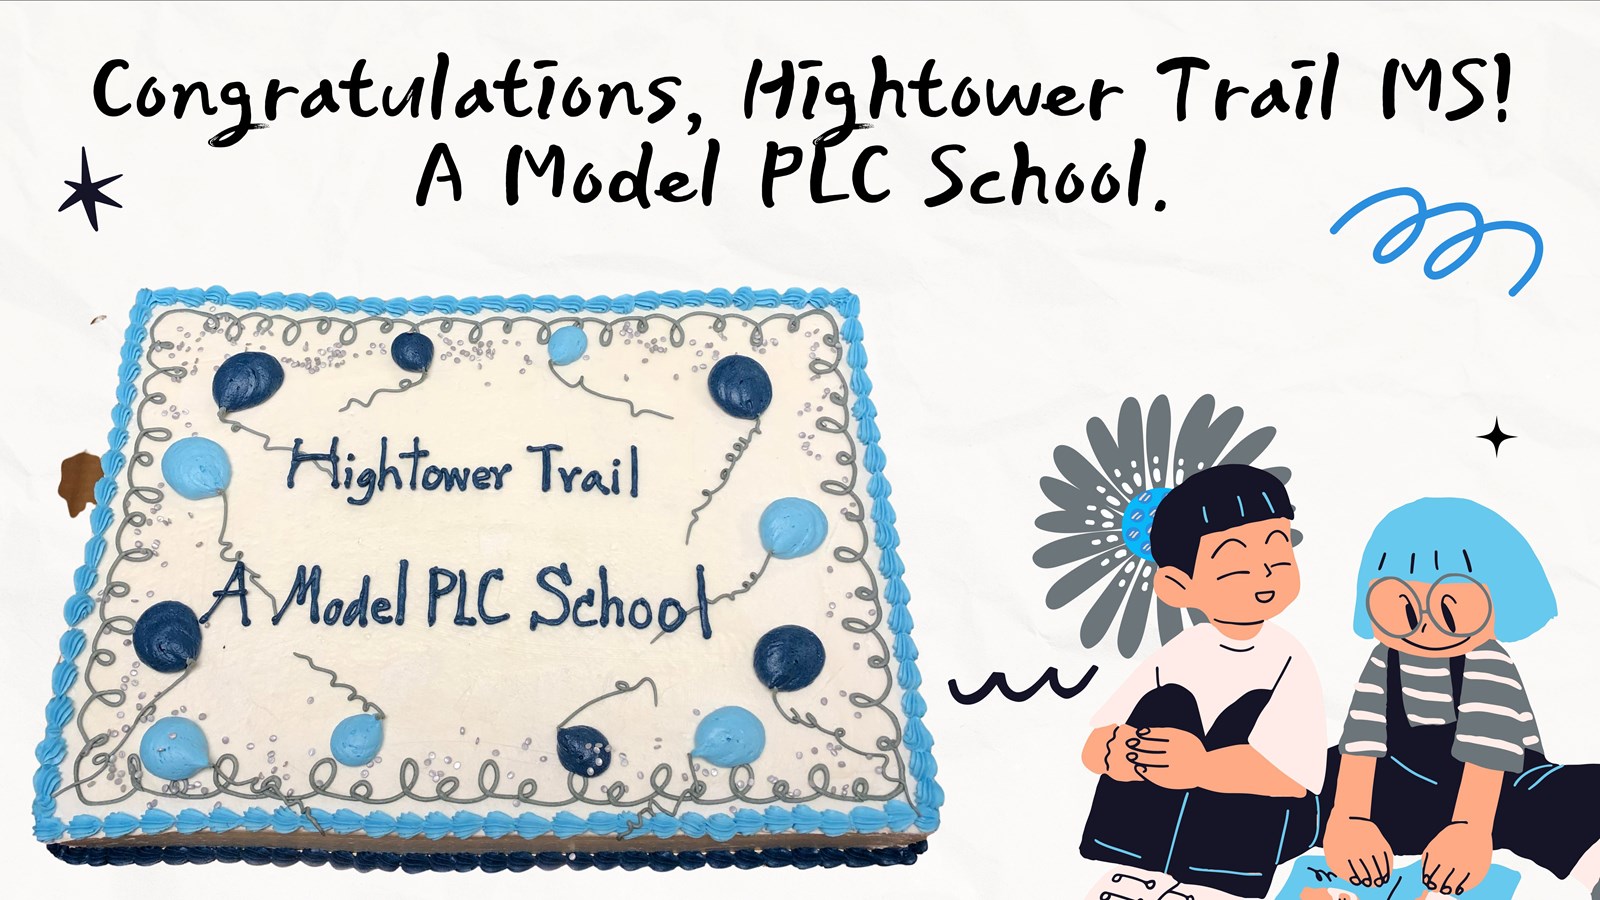 Congrats HTMS - Model PLC school